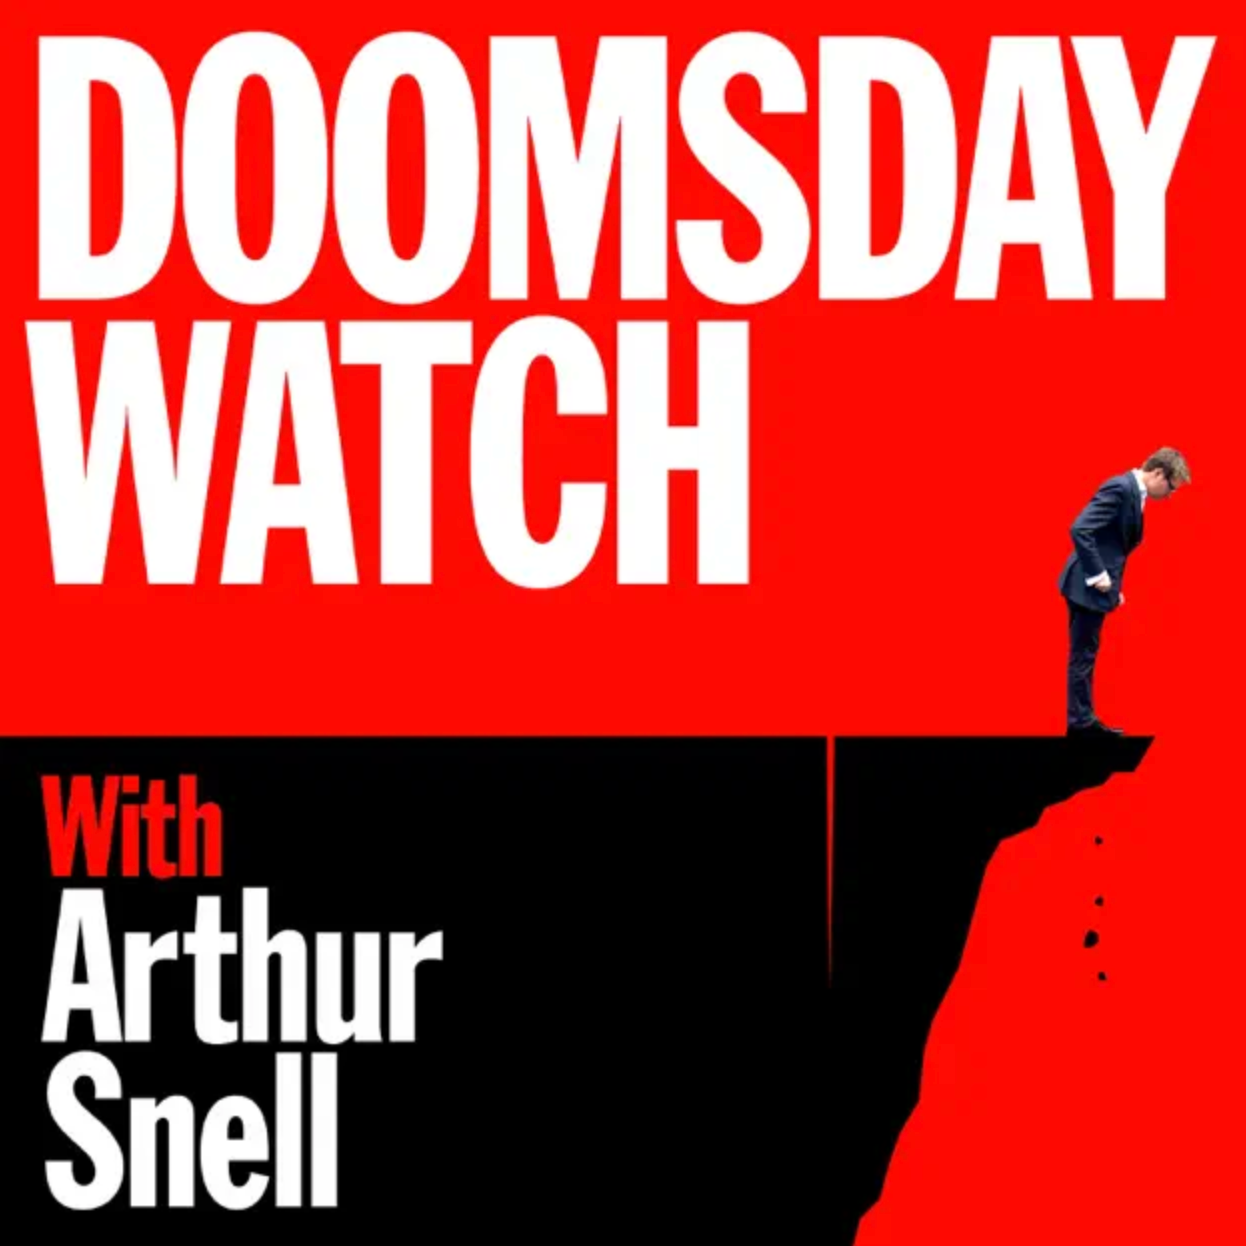 doomsday+watch+logo?format=2500w